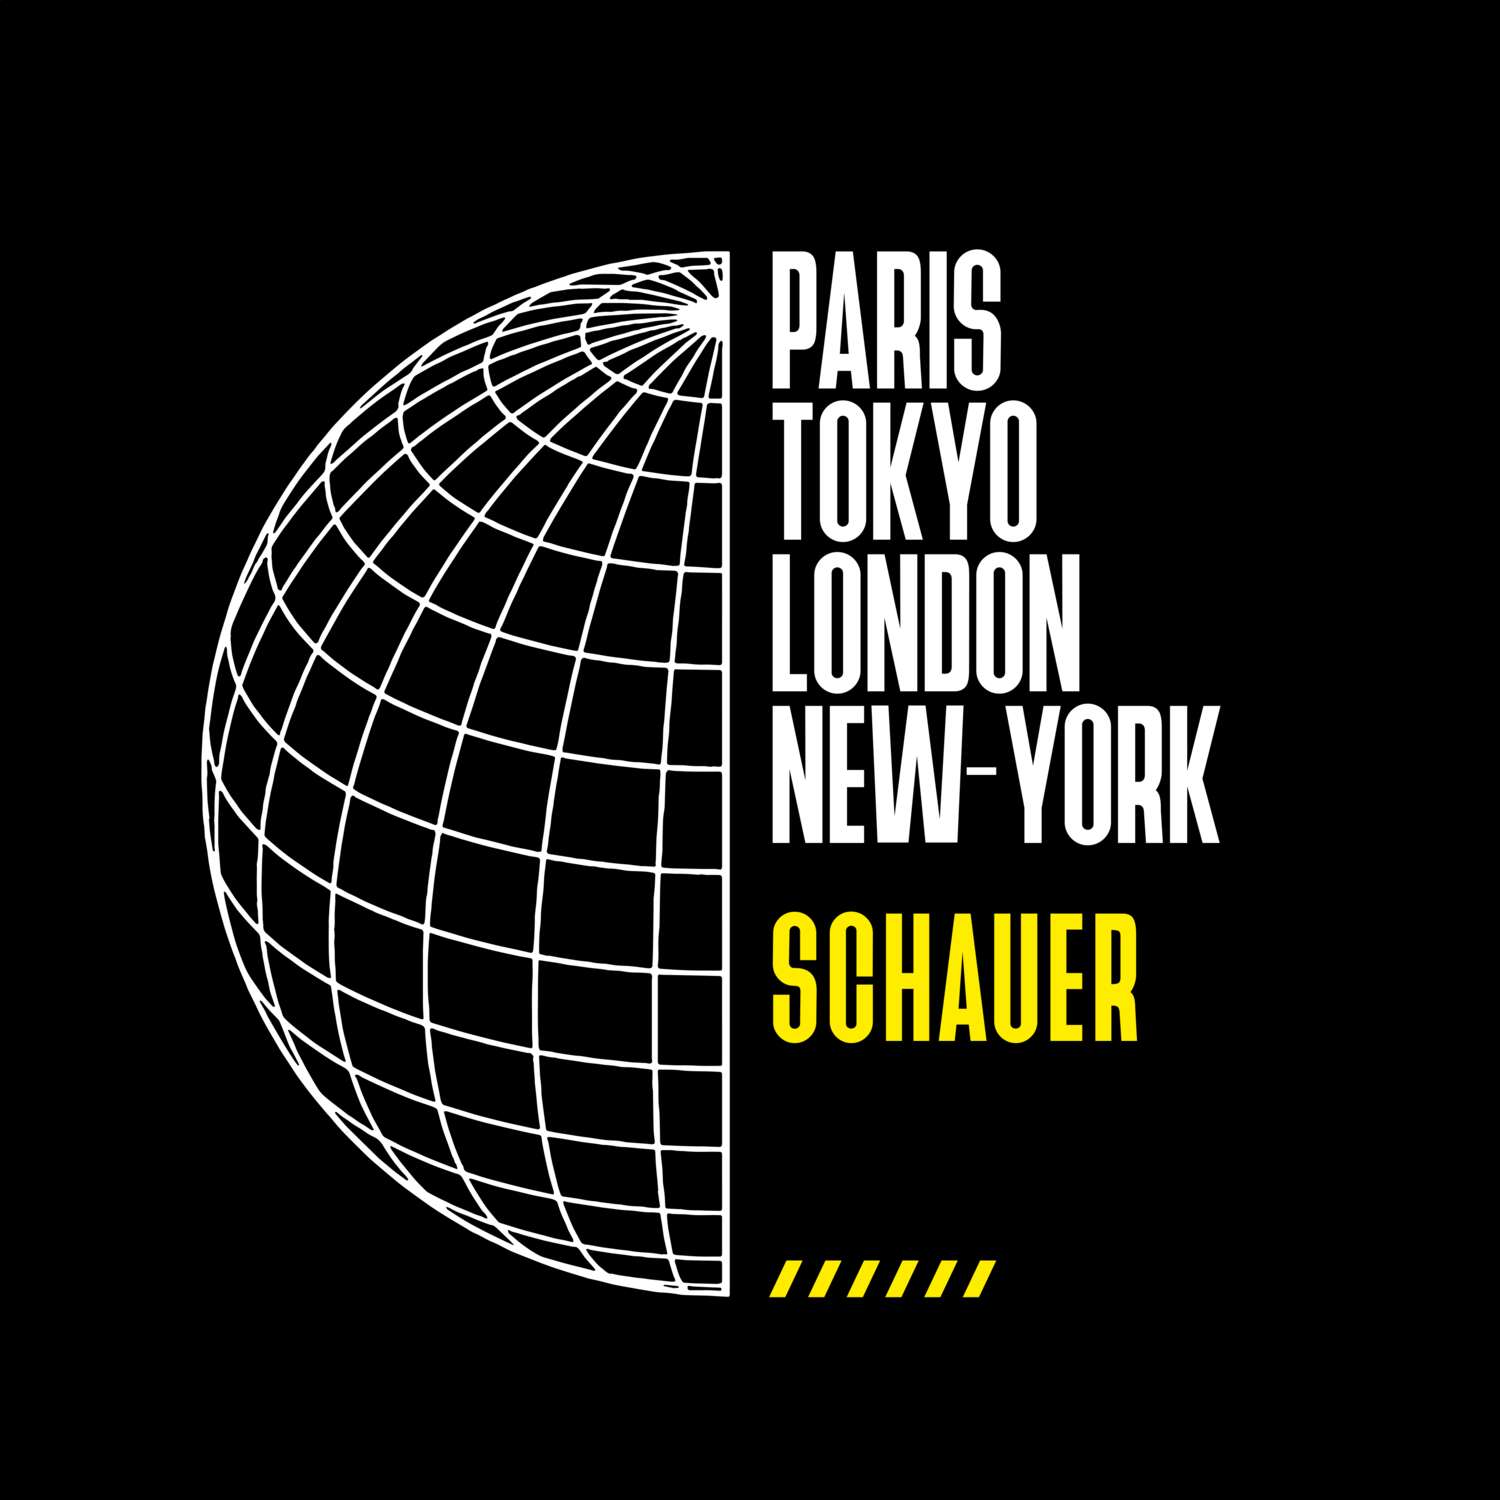 Schauer T-Shirt »Paris Tokyo London«